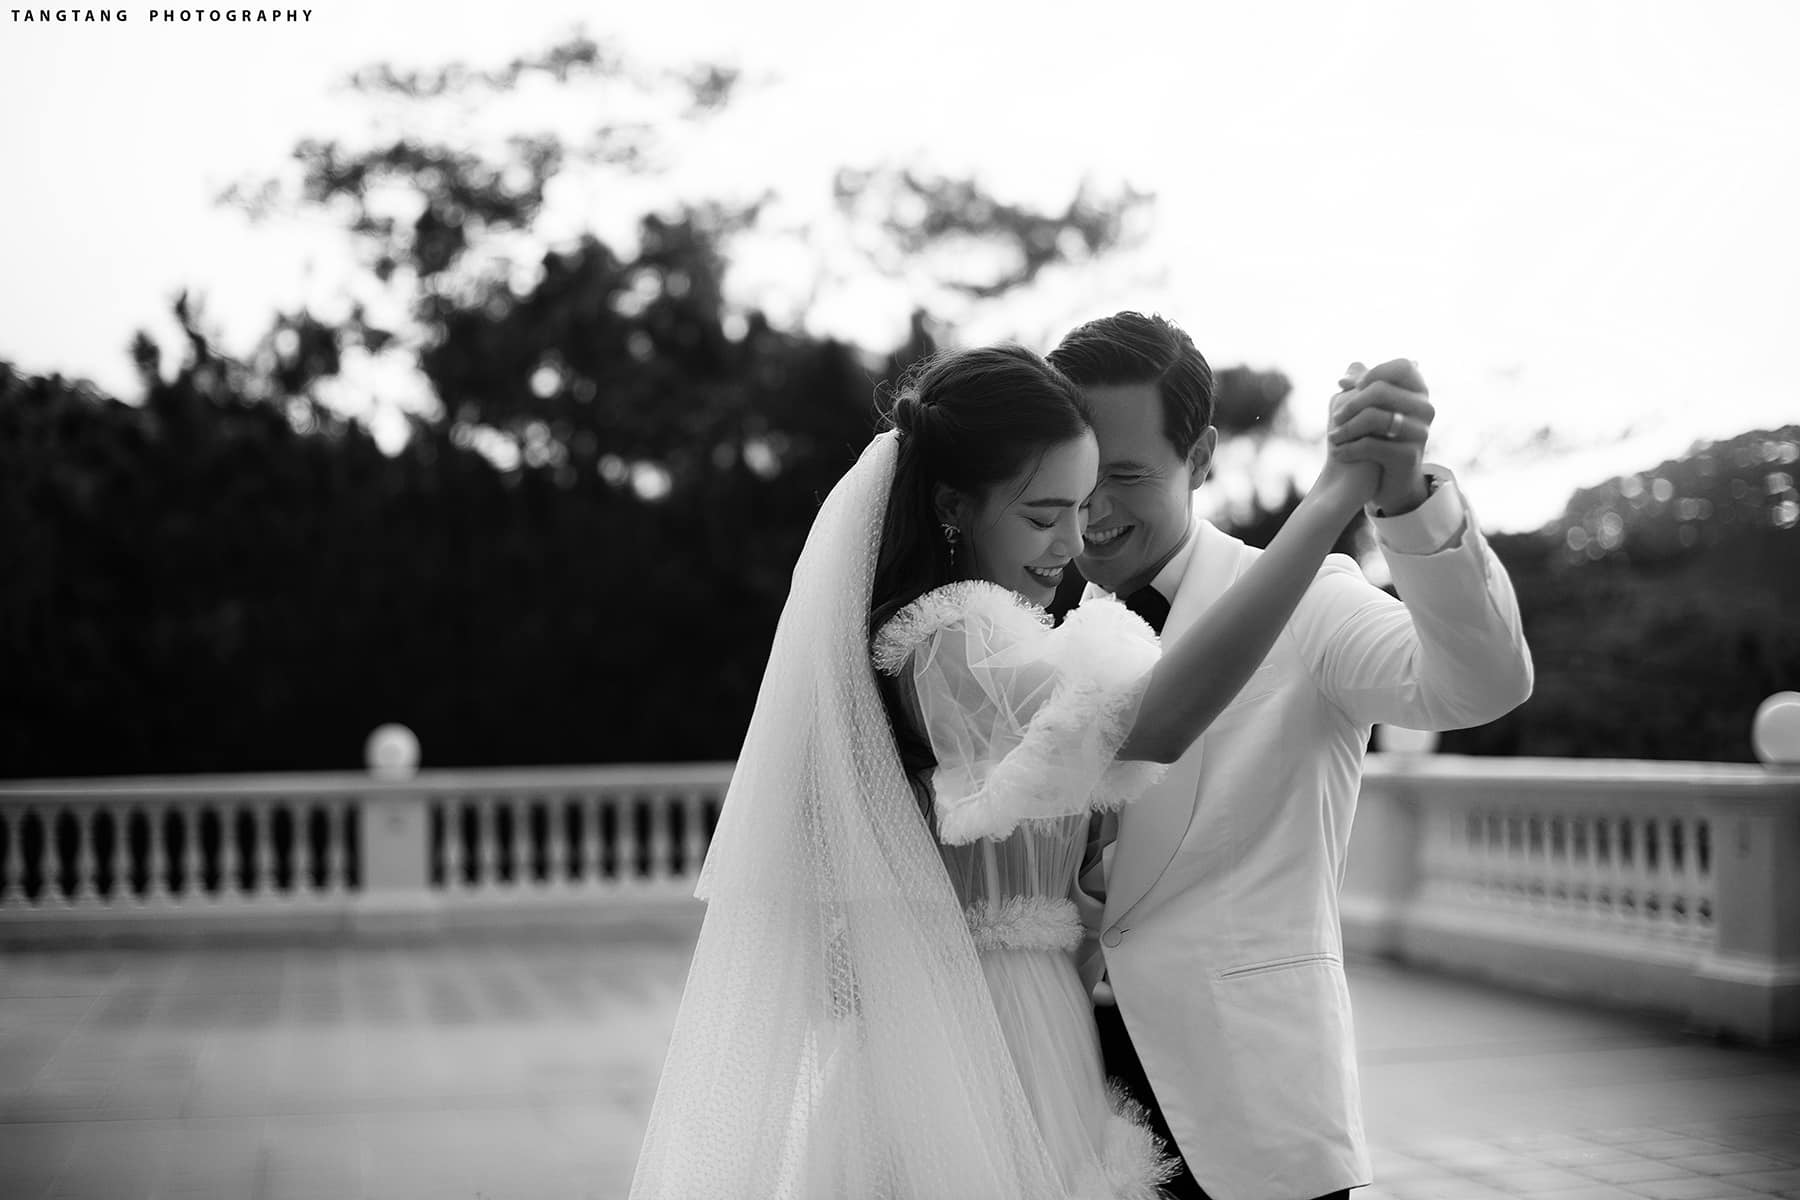 Hồ Ngọc Hà - Kim Lý là một cặp đôi đẹp, tình cảm. Bức ảnh này cho thấy sự hạnh phúc và tình yêu thật sự của họ. Nếu bạn là fan của cặp đôi này, đây là cơ hội để thưởng thức bức ảnh đặc biệt này.